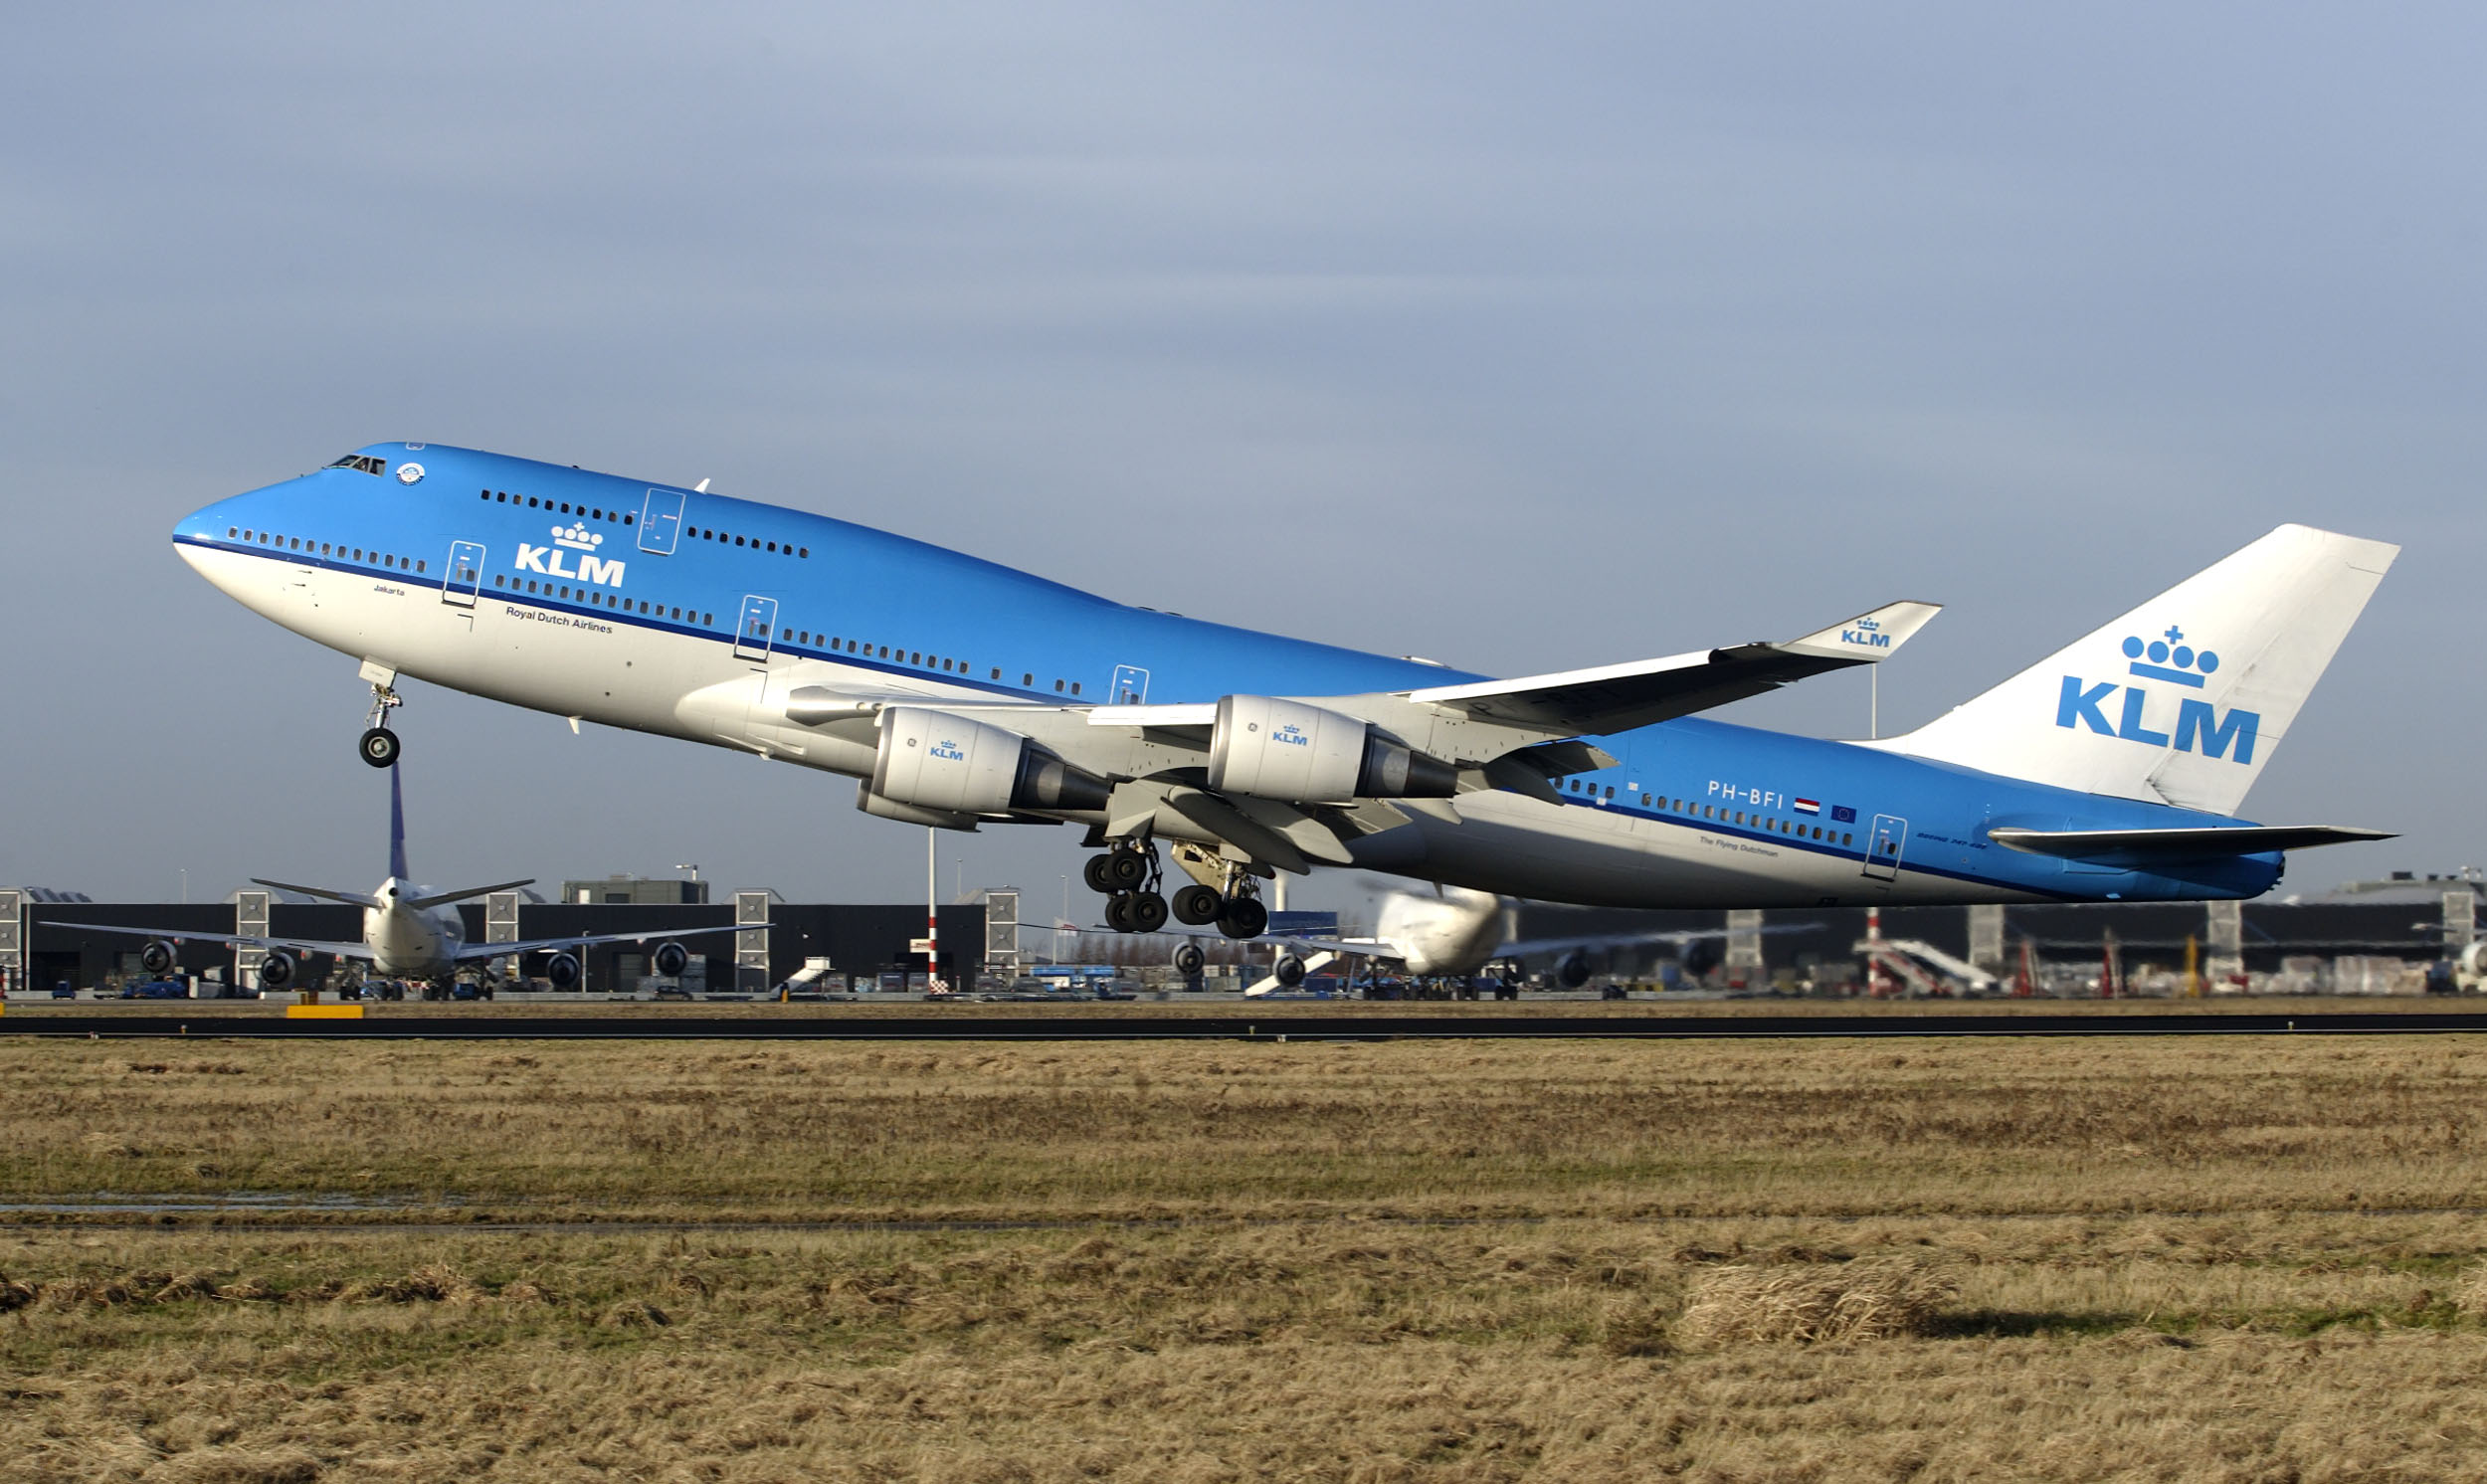 A KLM március 29-én repült utoljára menetrend szerint Jumbóval, az ausztrál Qantasszal együtt végleg leteszik a híres típust (fotó: KLM)